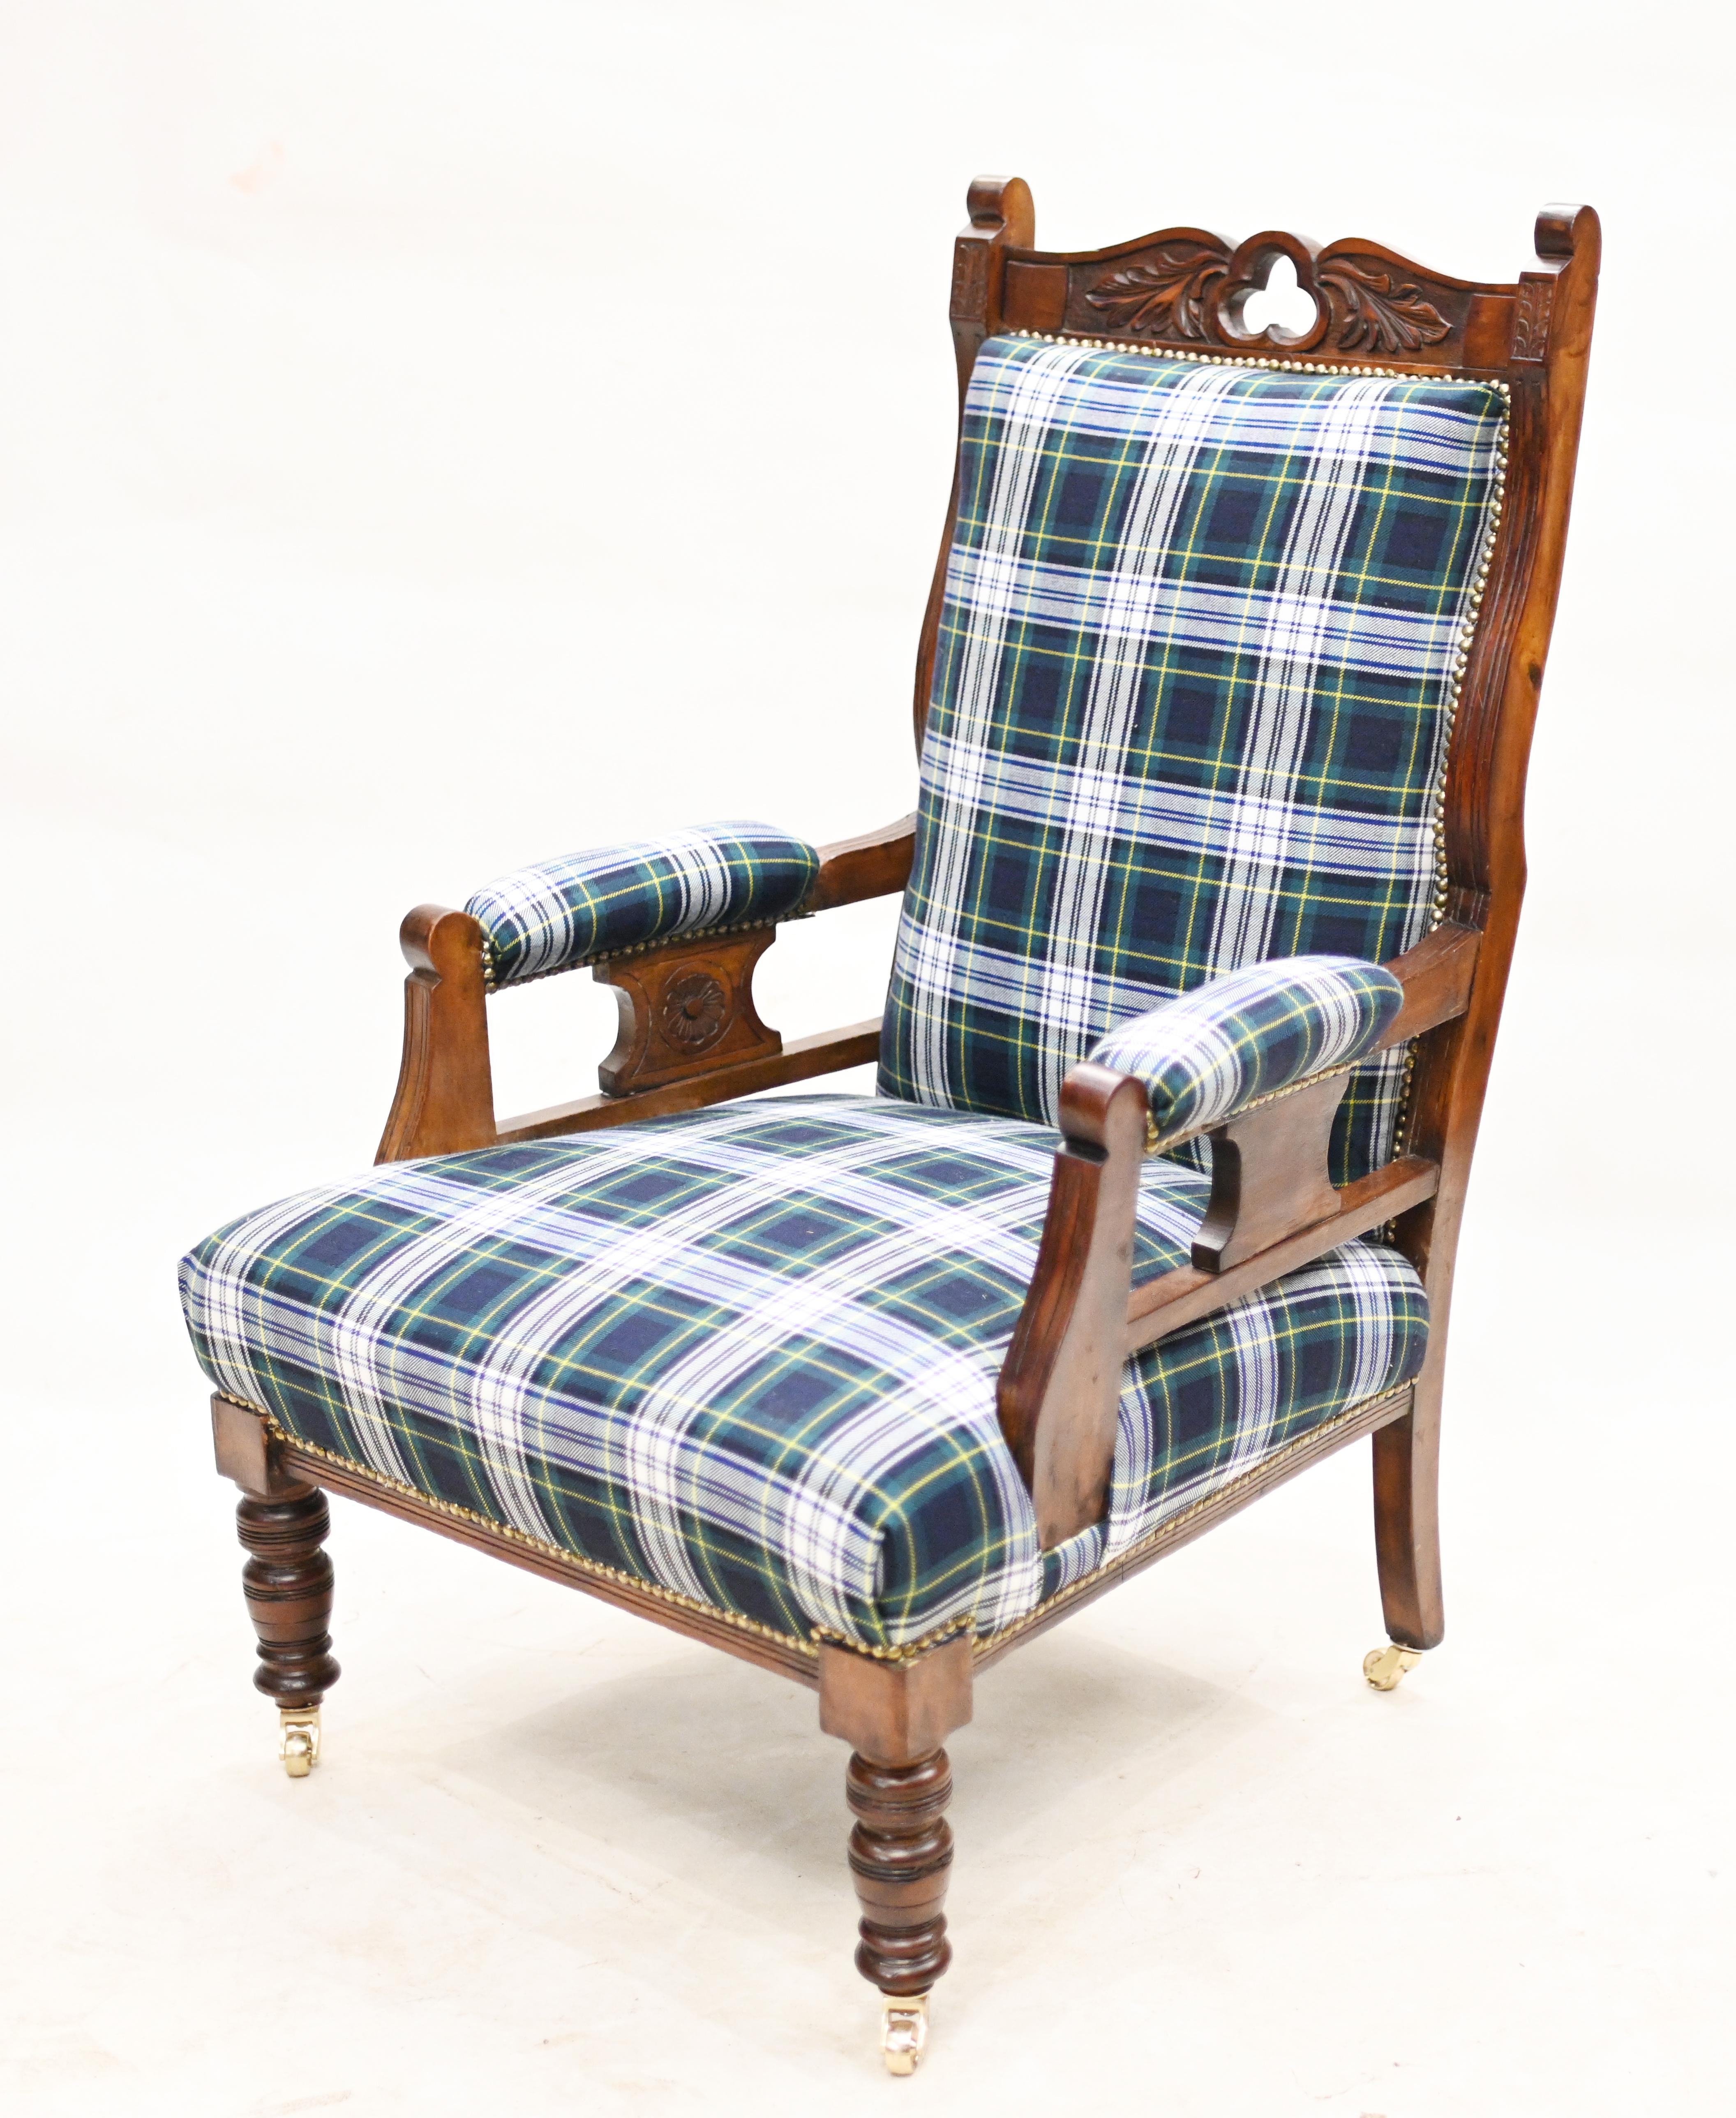 Magnifique fauteuil édouardien en acajou
Très confortable, avec des accoudoirs et un dossier matelassés.
Bien entendu, la tapisserie a été récemment recouverte d'un tissu écossais, ce qui lui confère un aspect plus vivant.
Circa 1910 et nous l'avons